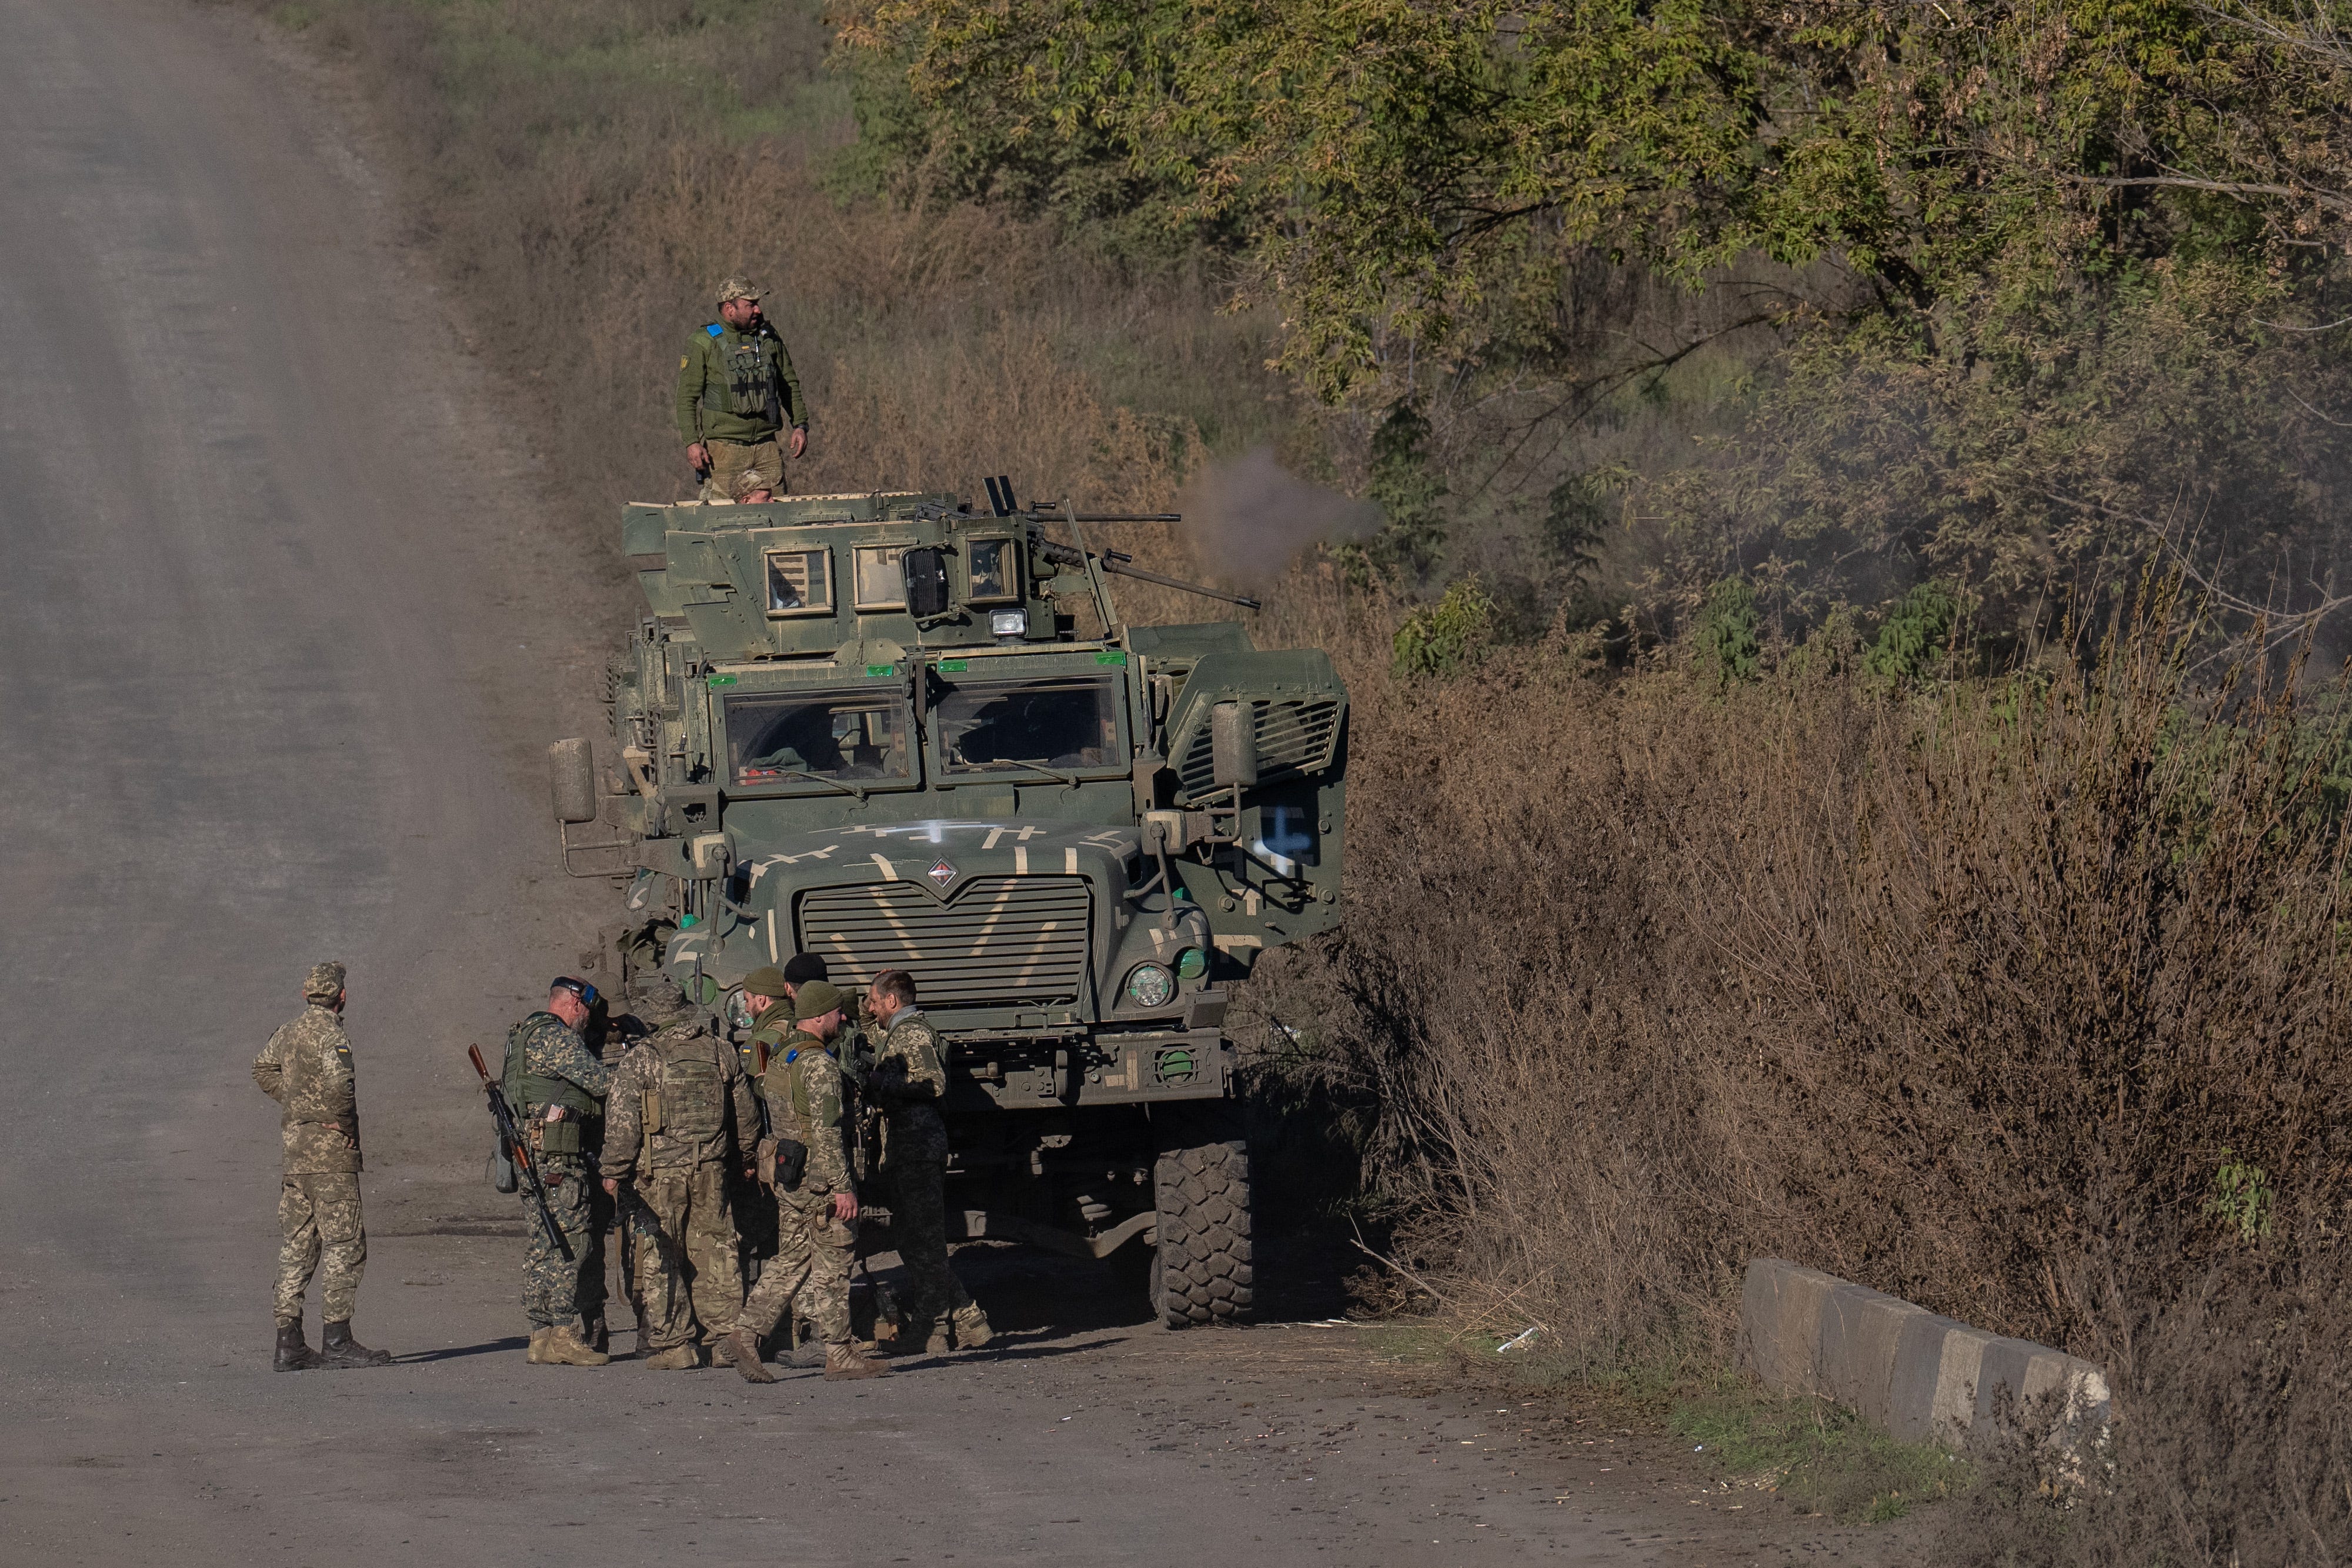 Soldaten in Tarnung in der Nähe eines gepanzerten Fahrzeugs auf einer unbefestigten Straße